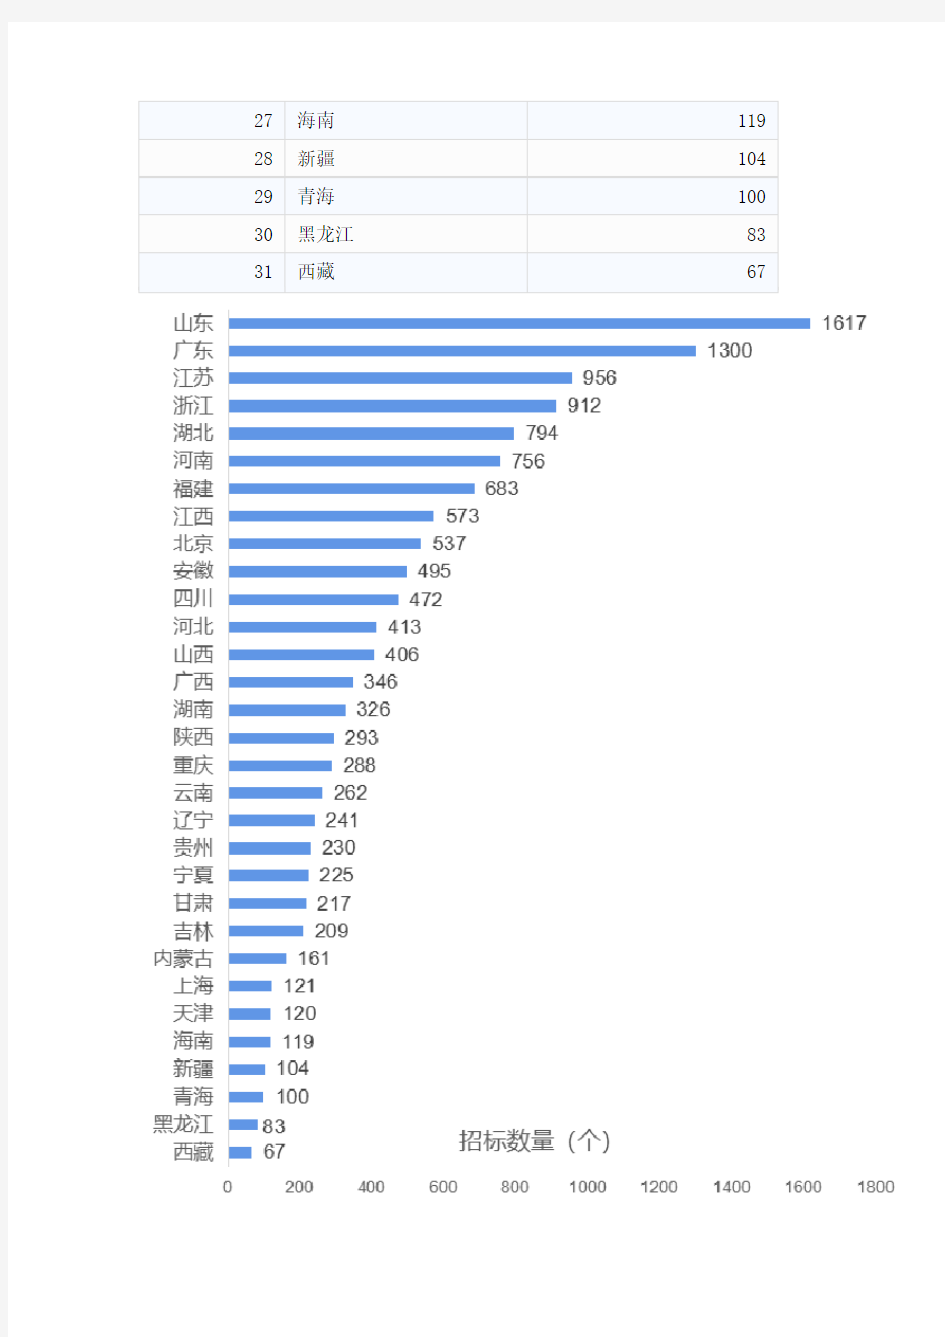 2019年智慧校园行业招标中国(内地)排行榜